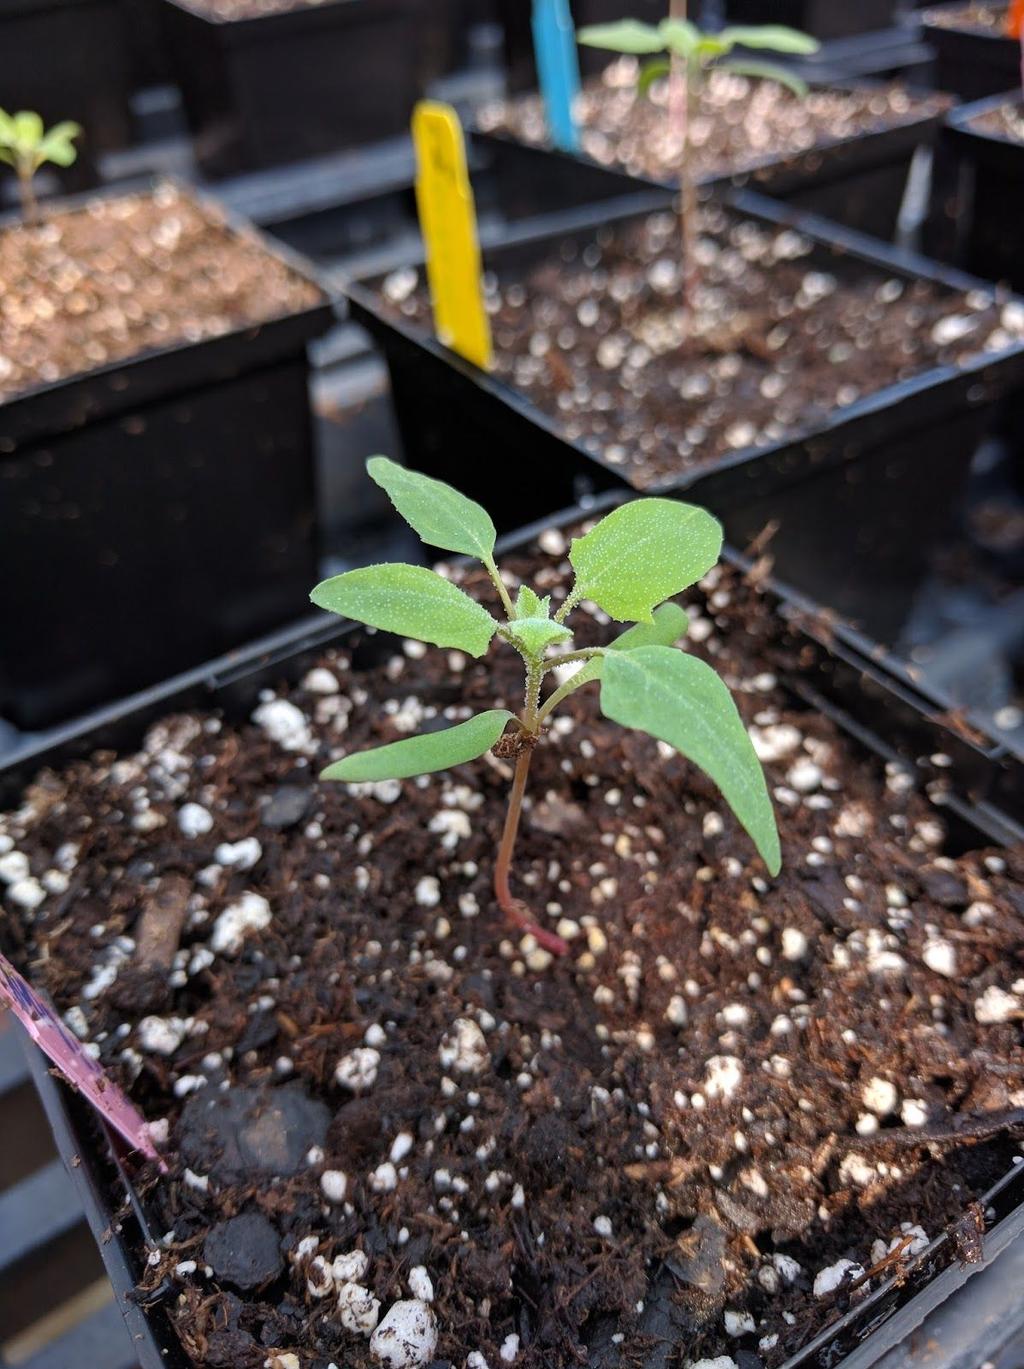 Plant age: 2 weeks (Wet media on left, dry